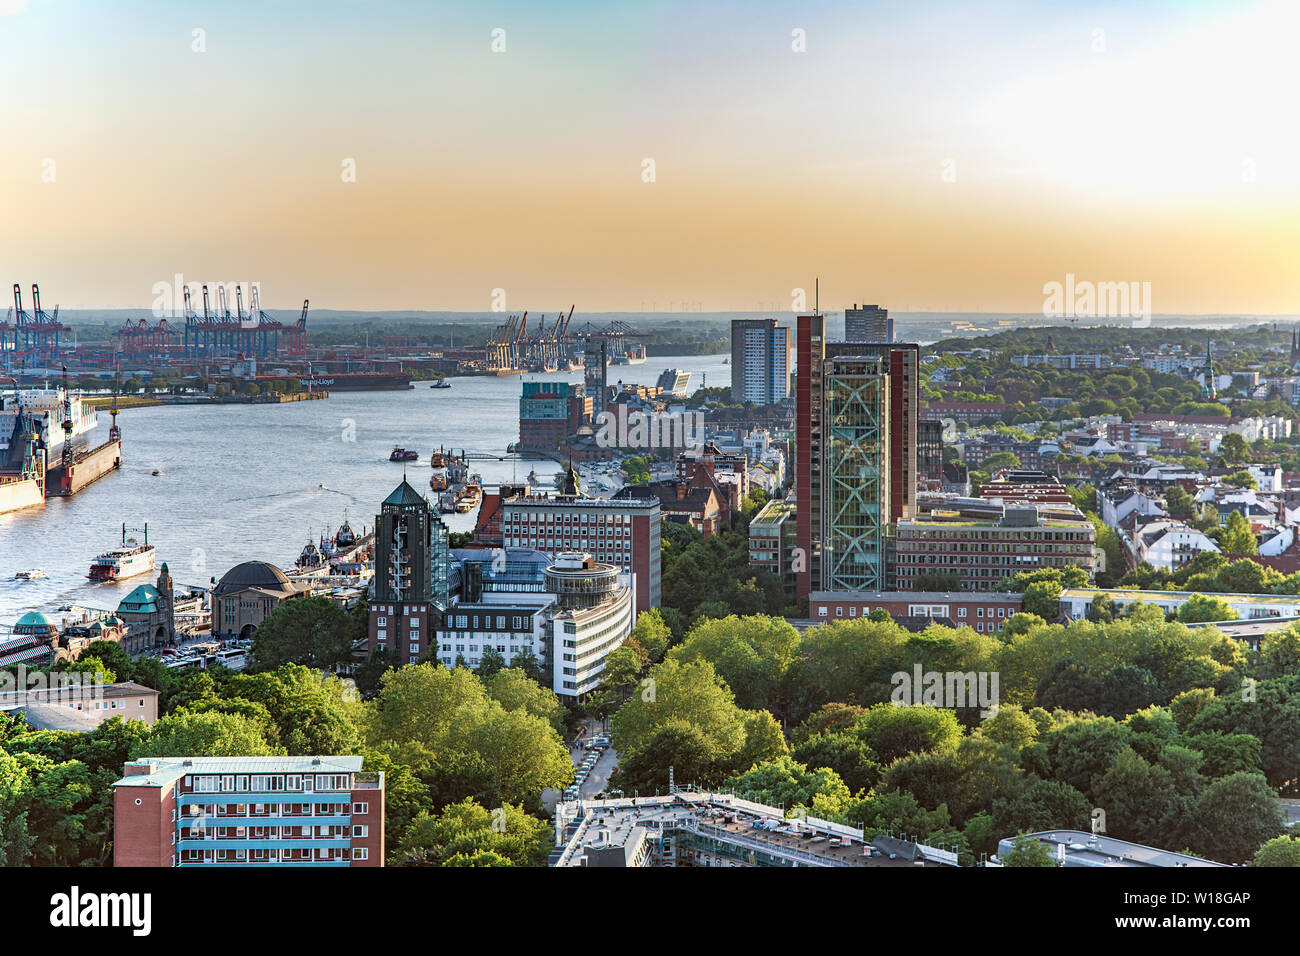 Blick auf die Elbe mit St. Pauli Landungsbrücken, Atlantic-Haus, Tollerort, Blohm + Voss Stock Photo